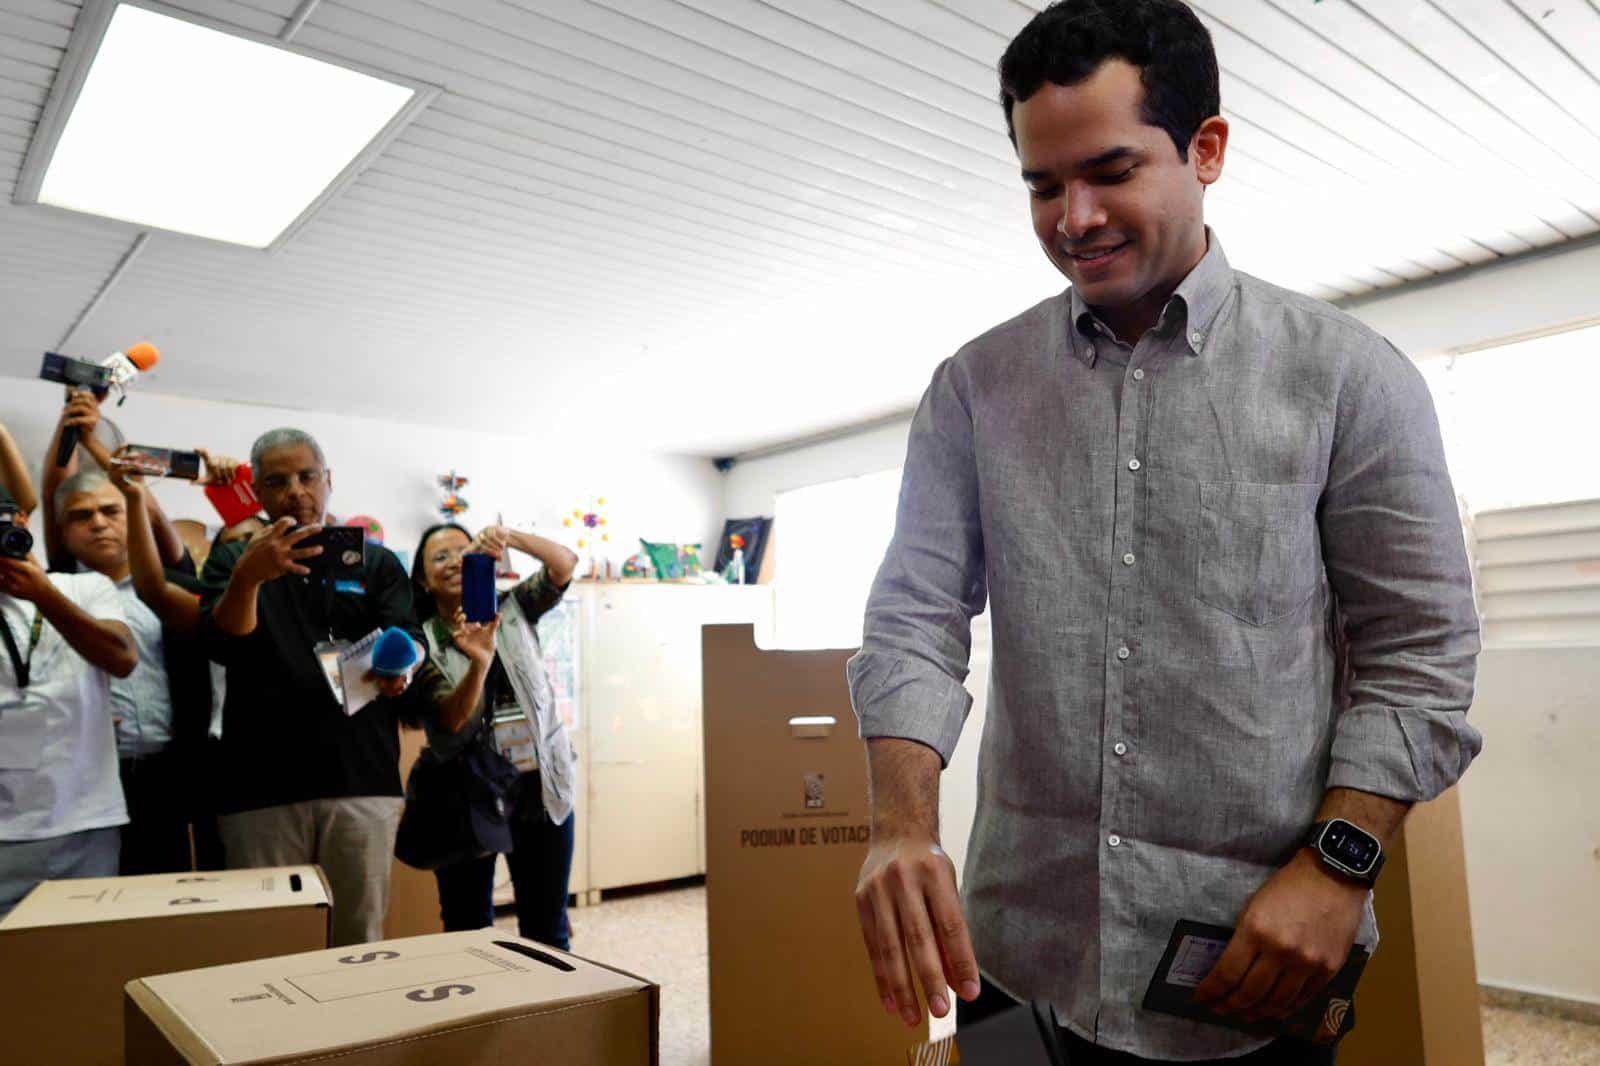 El candidato a senador por el Distrito Nacional, Omar Fernández, deposita su voto en la urna.